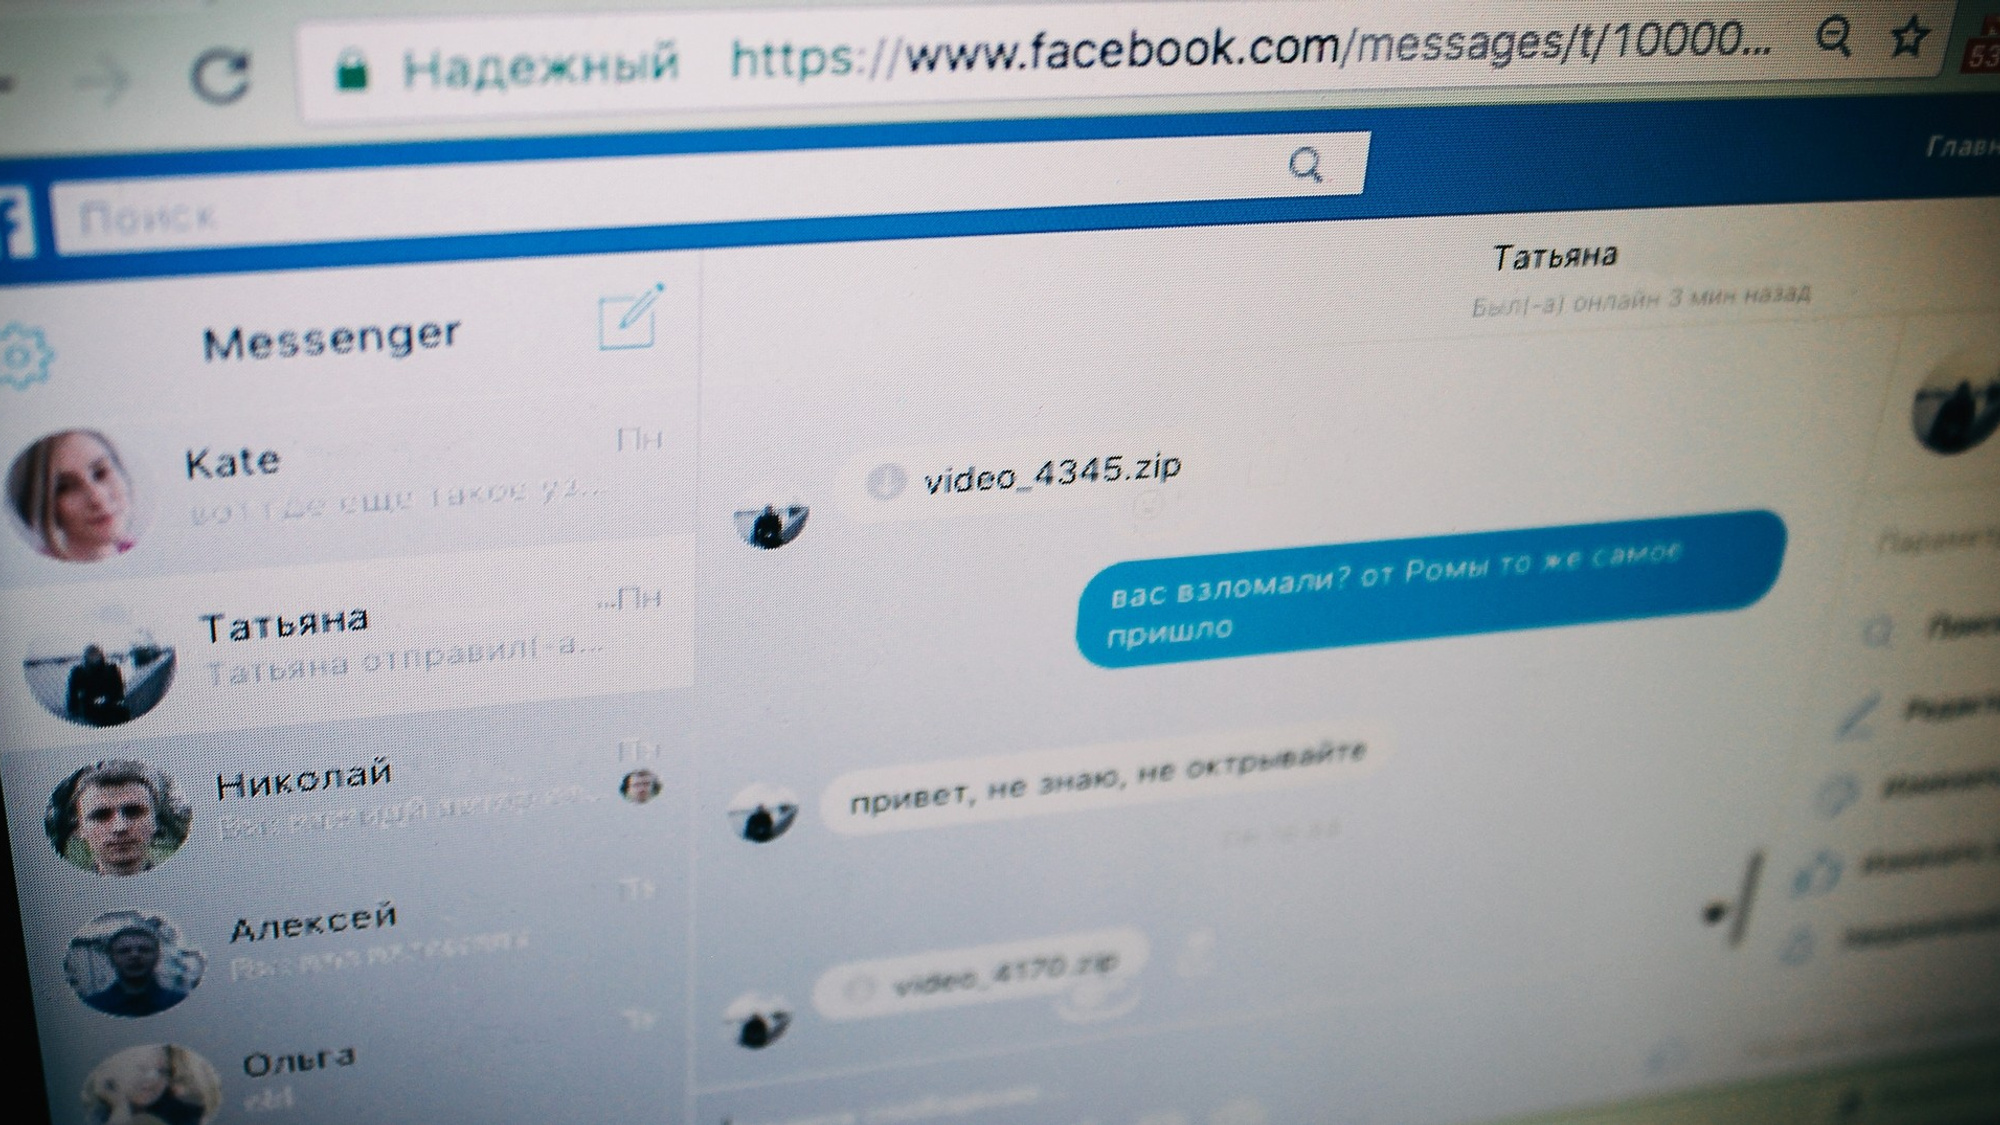 Клонирует сам себя и общается с друзьями: на пользователей Facebook напал новый вирус